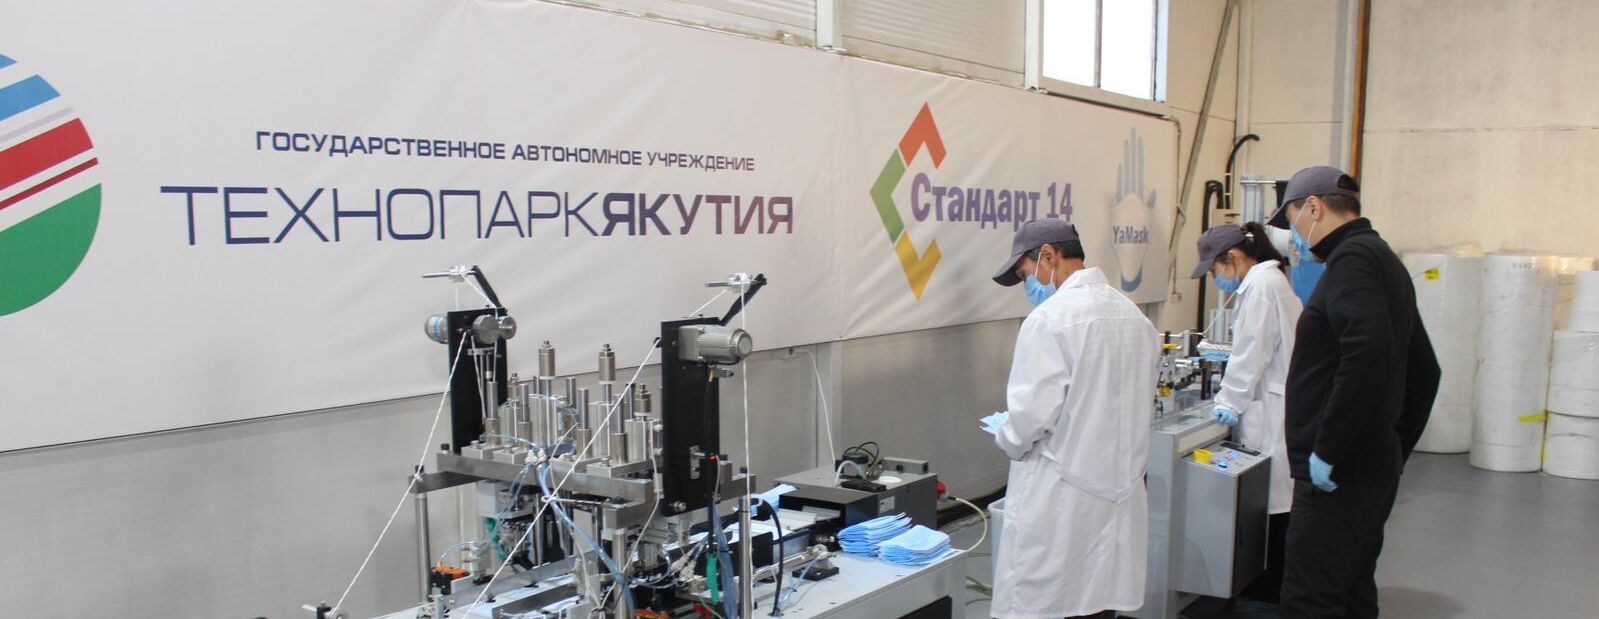 Выручка резидентов технопарка «Якутия» выросла в 2 раза в этом году